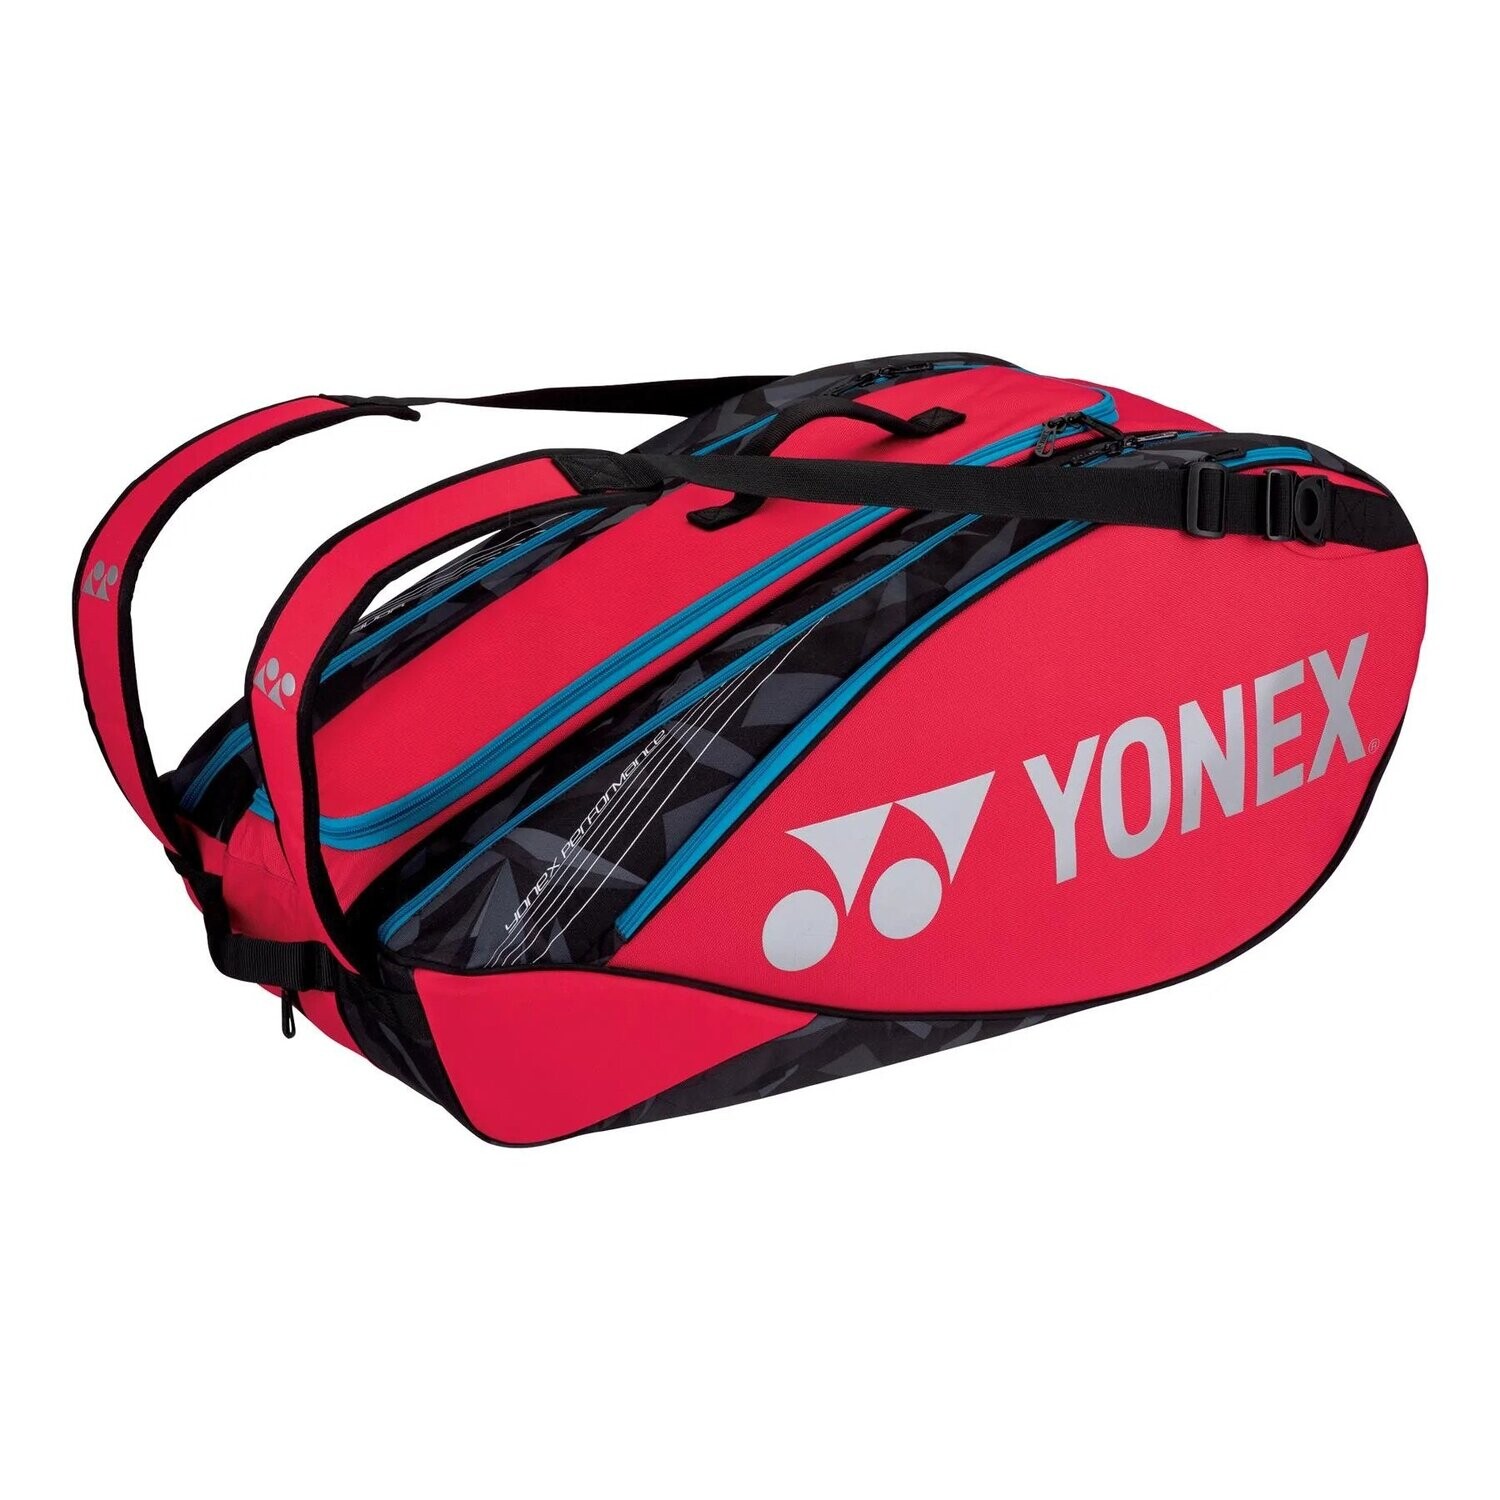 Yonex Pro Racket Bag 9 pcs - Tango Red